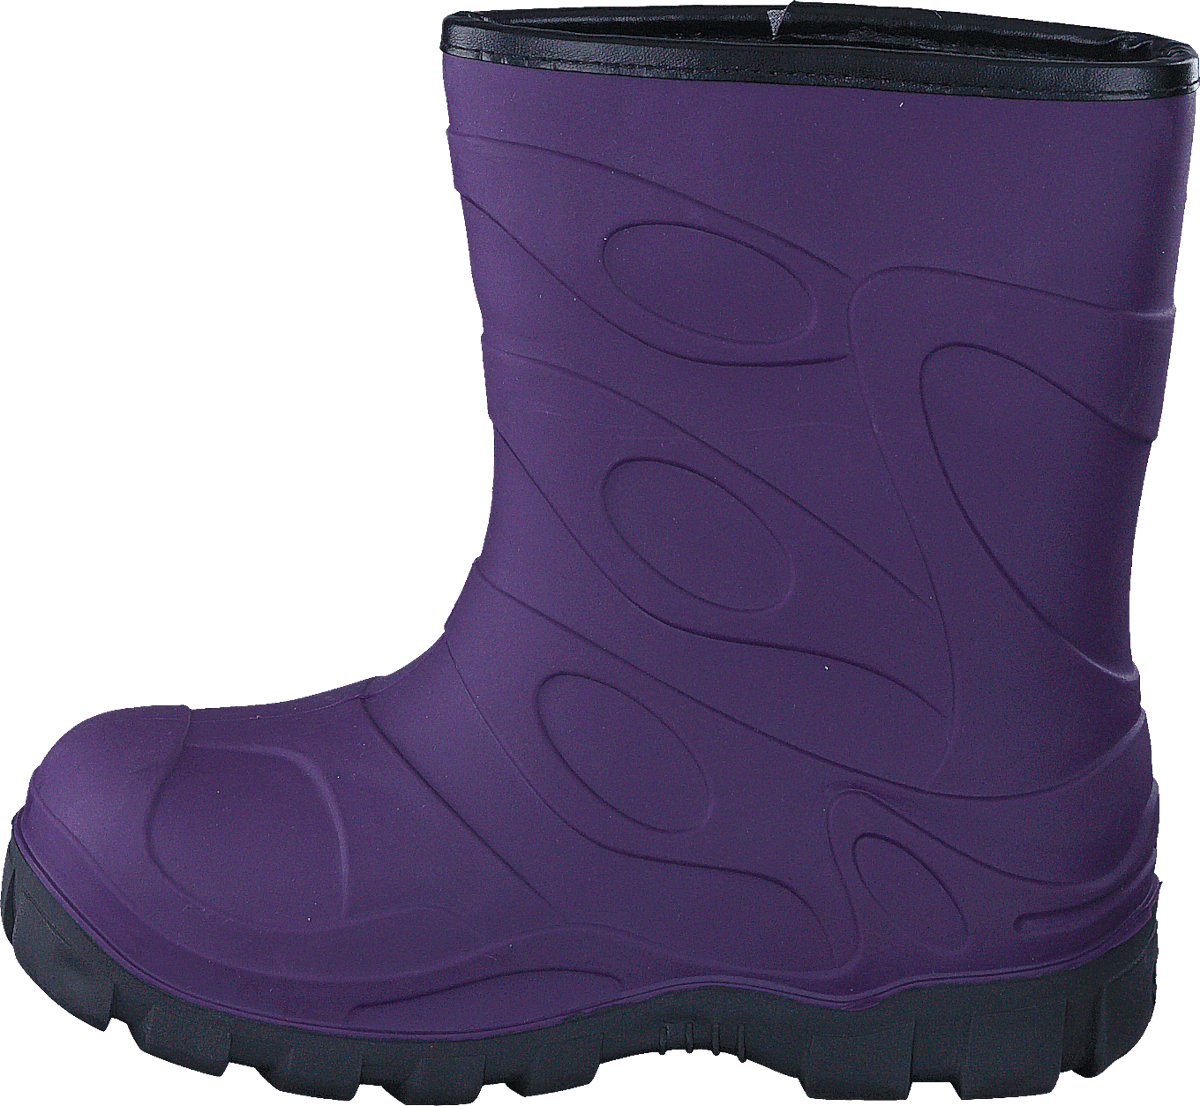 447-5046 Waterproof Warm Lined Purple